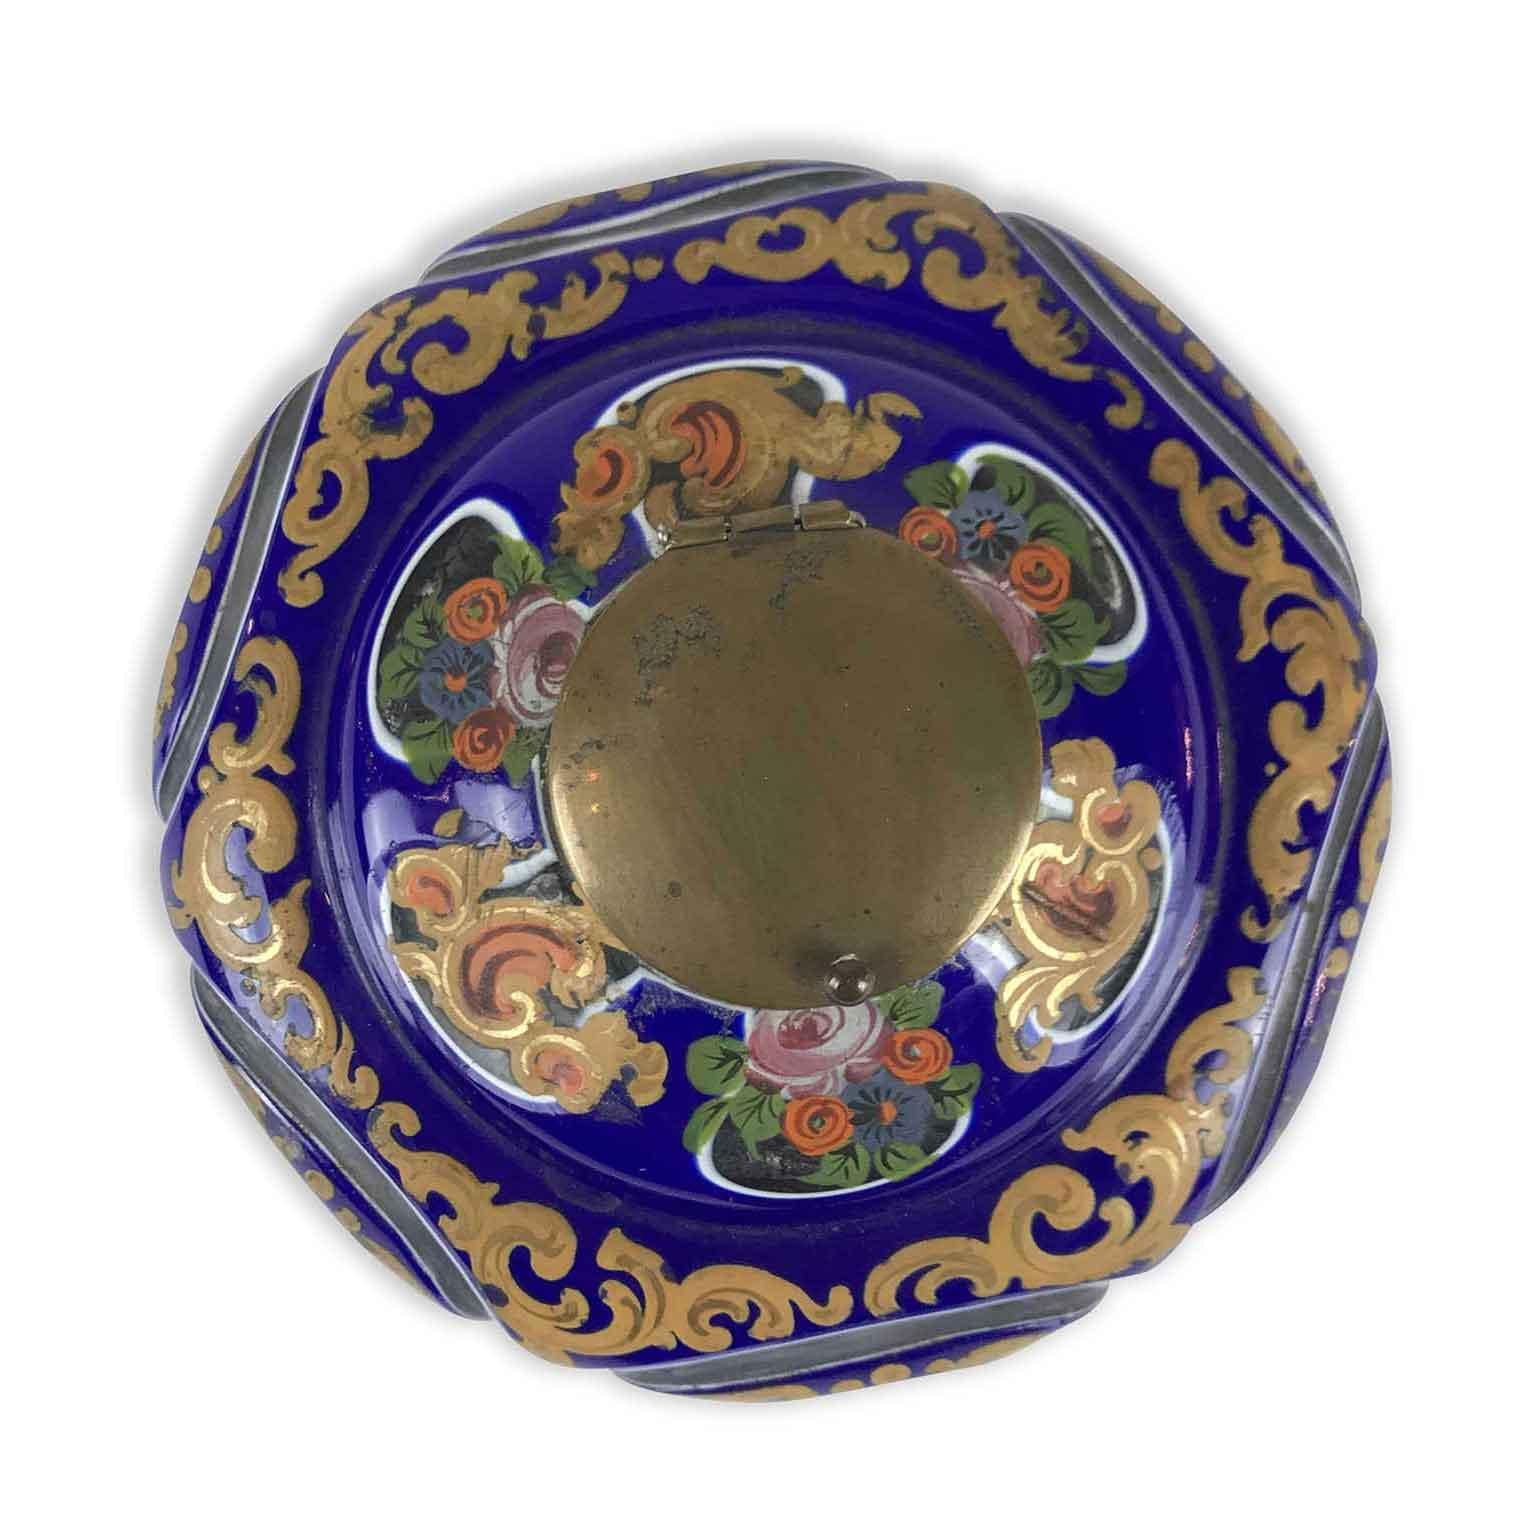 Jüdisches Glas-Tintenfass aus dem frühen 19. Jahrhundert aus der Biedermeierzeit, europäisch-österreichisch-ungarischen Ursprungs. Dieses Tintenfass aus klarem, ummanteltem Glas hat eine runde Form.  hat eine blau-weiße Schicht und ist mit schönen